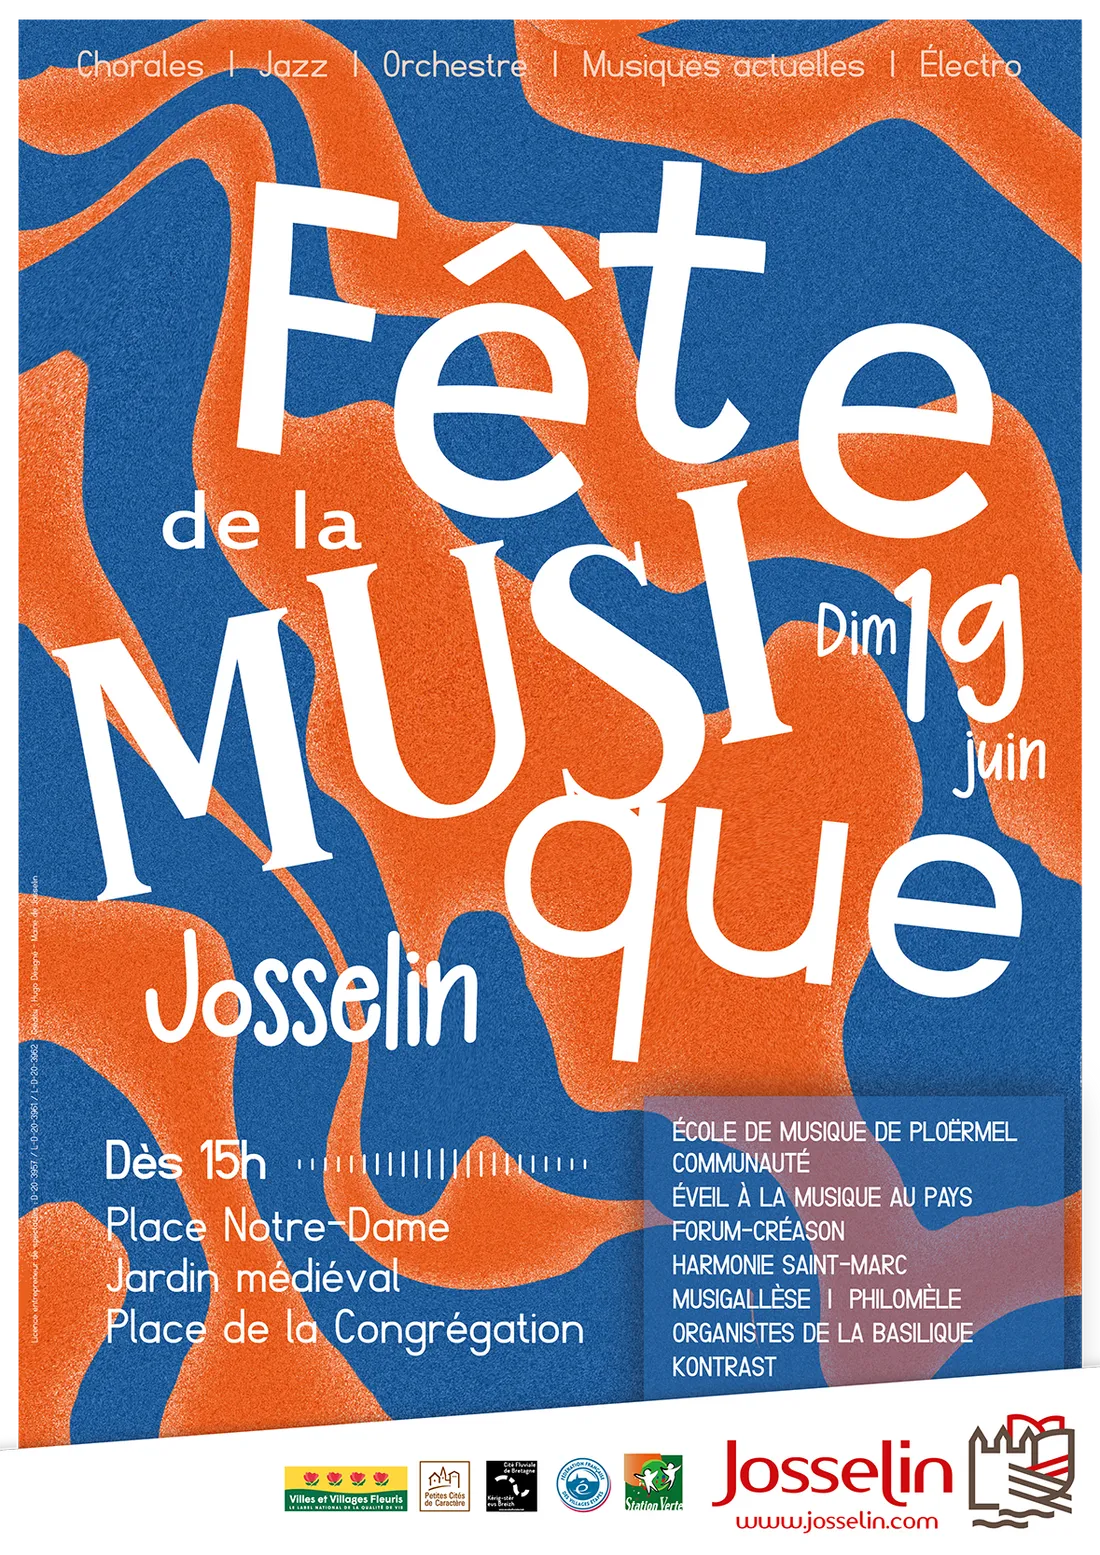 La Fête de la musique à Josselin, le dimanche 19 juin à partir de 15 H 00.